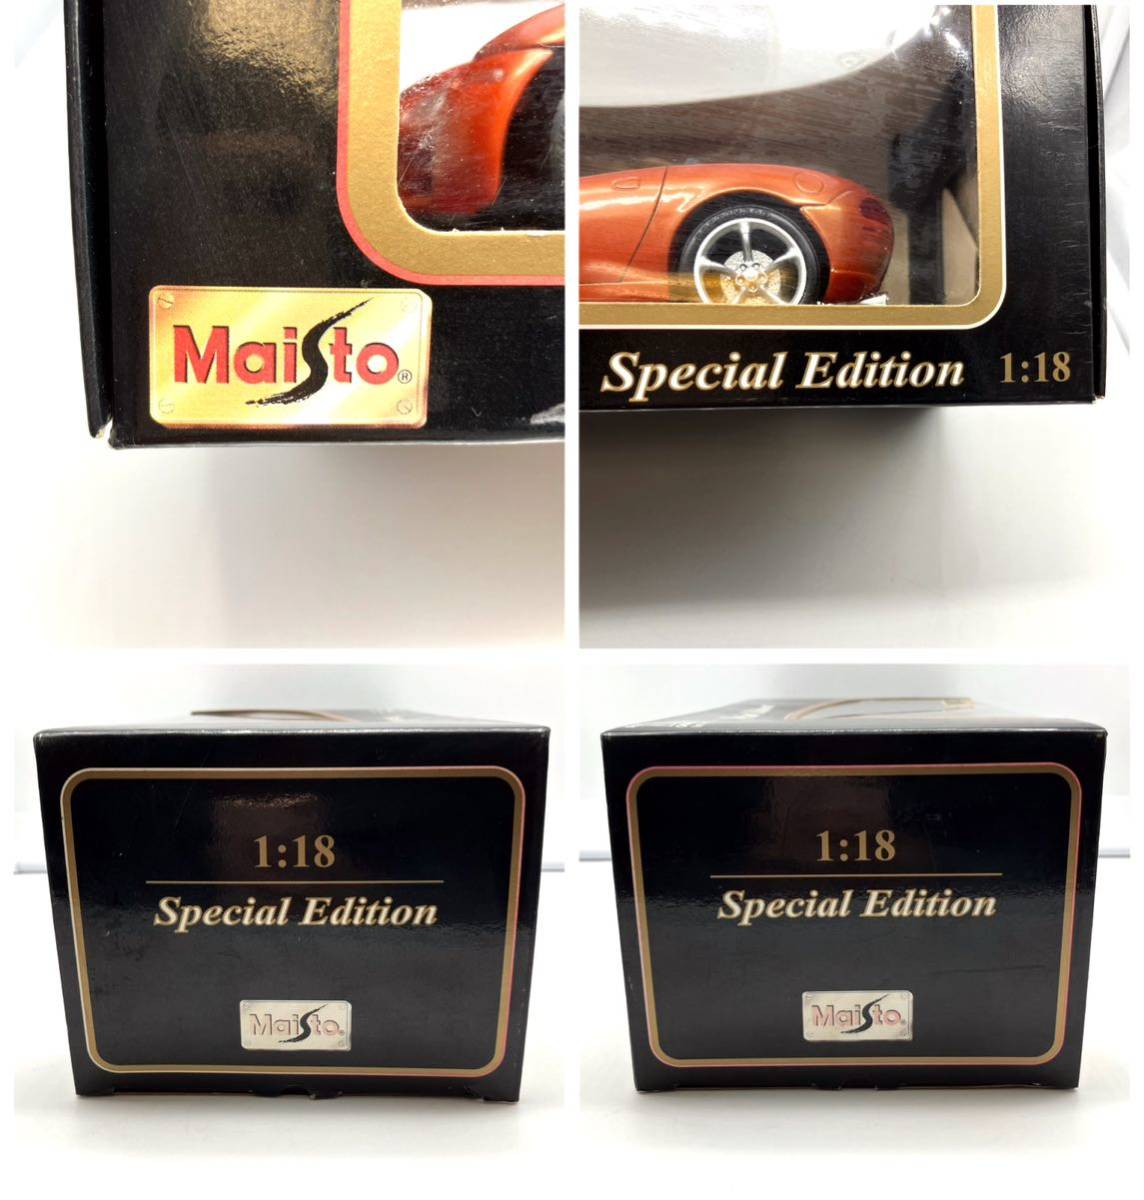 Maisto/マイスト/1/18/Special Edition/Dodge/Concept Vehicle/ダッジ コンセプトカー/ミニカー/オレンジ/箱付き/現状品/中古品_画像3